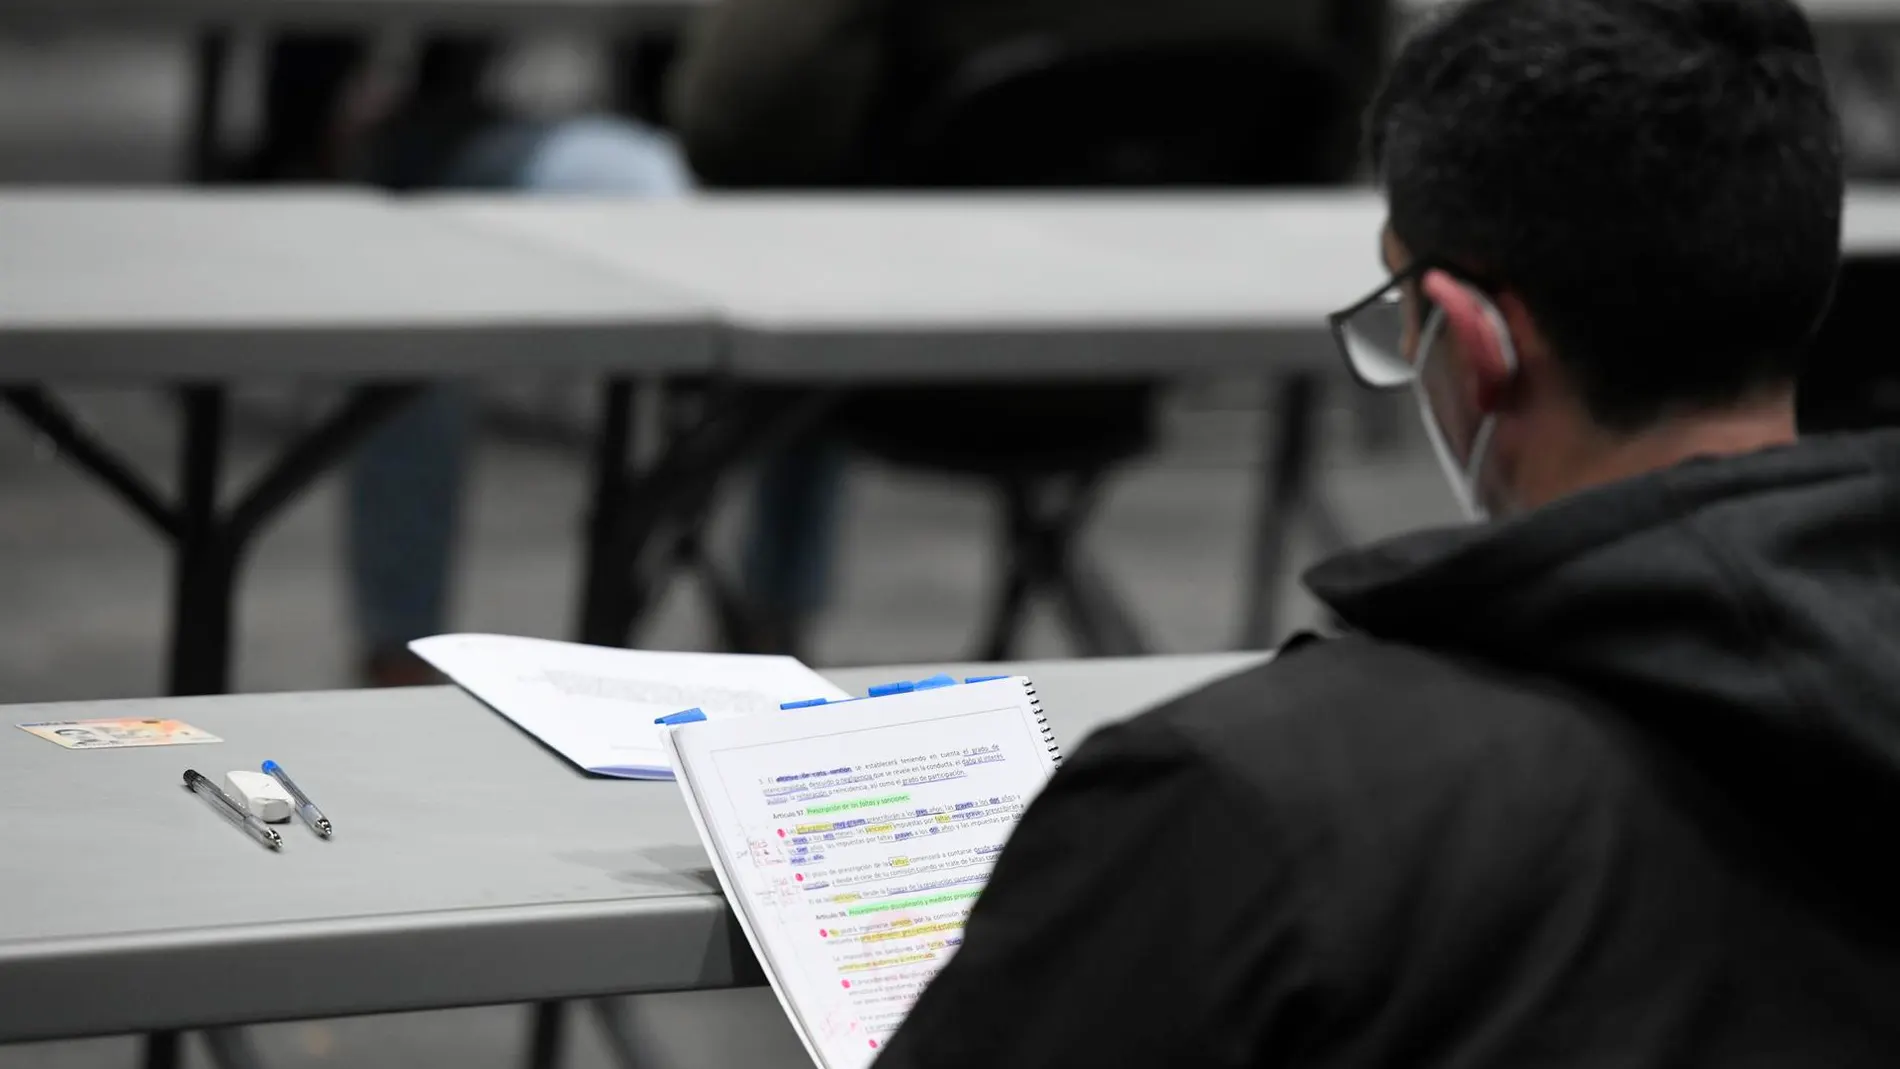 Un opositor revisa sus apuntes antes del examen (imagen de archivo)